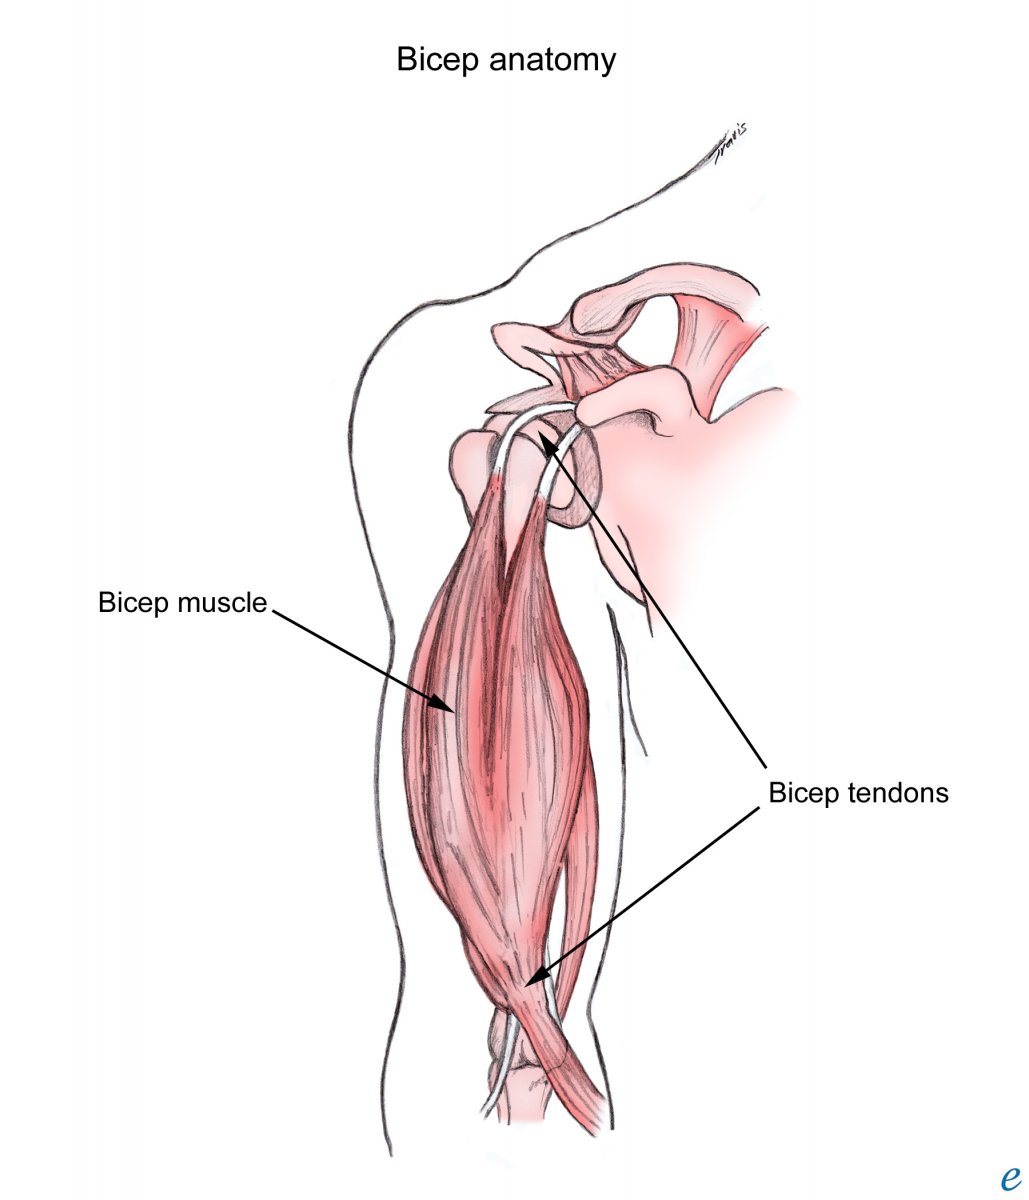 Длинная головка двуглавой мышцы плеча анатомия